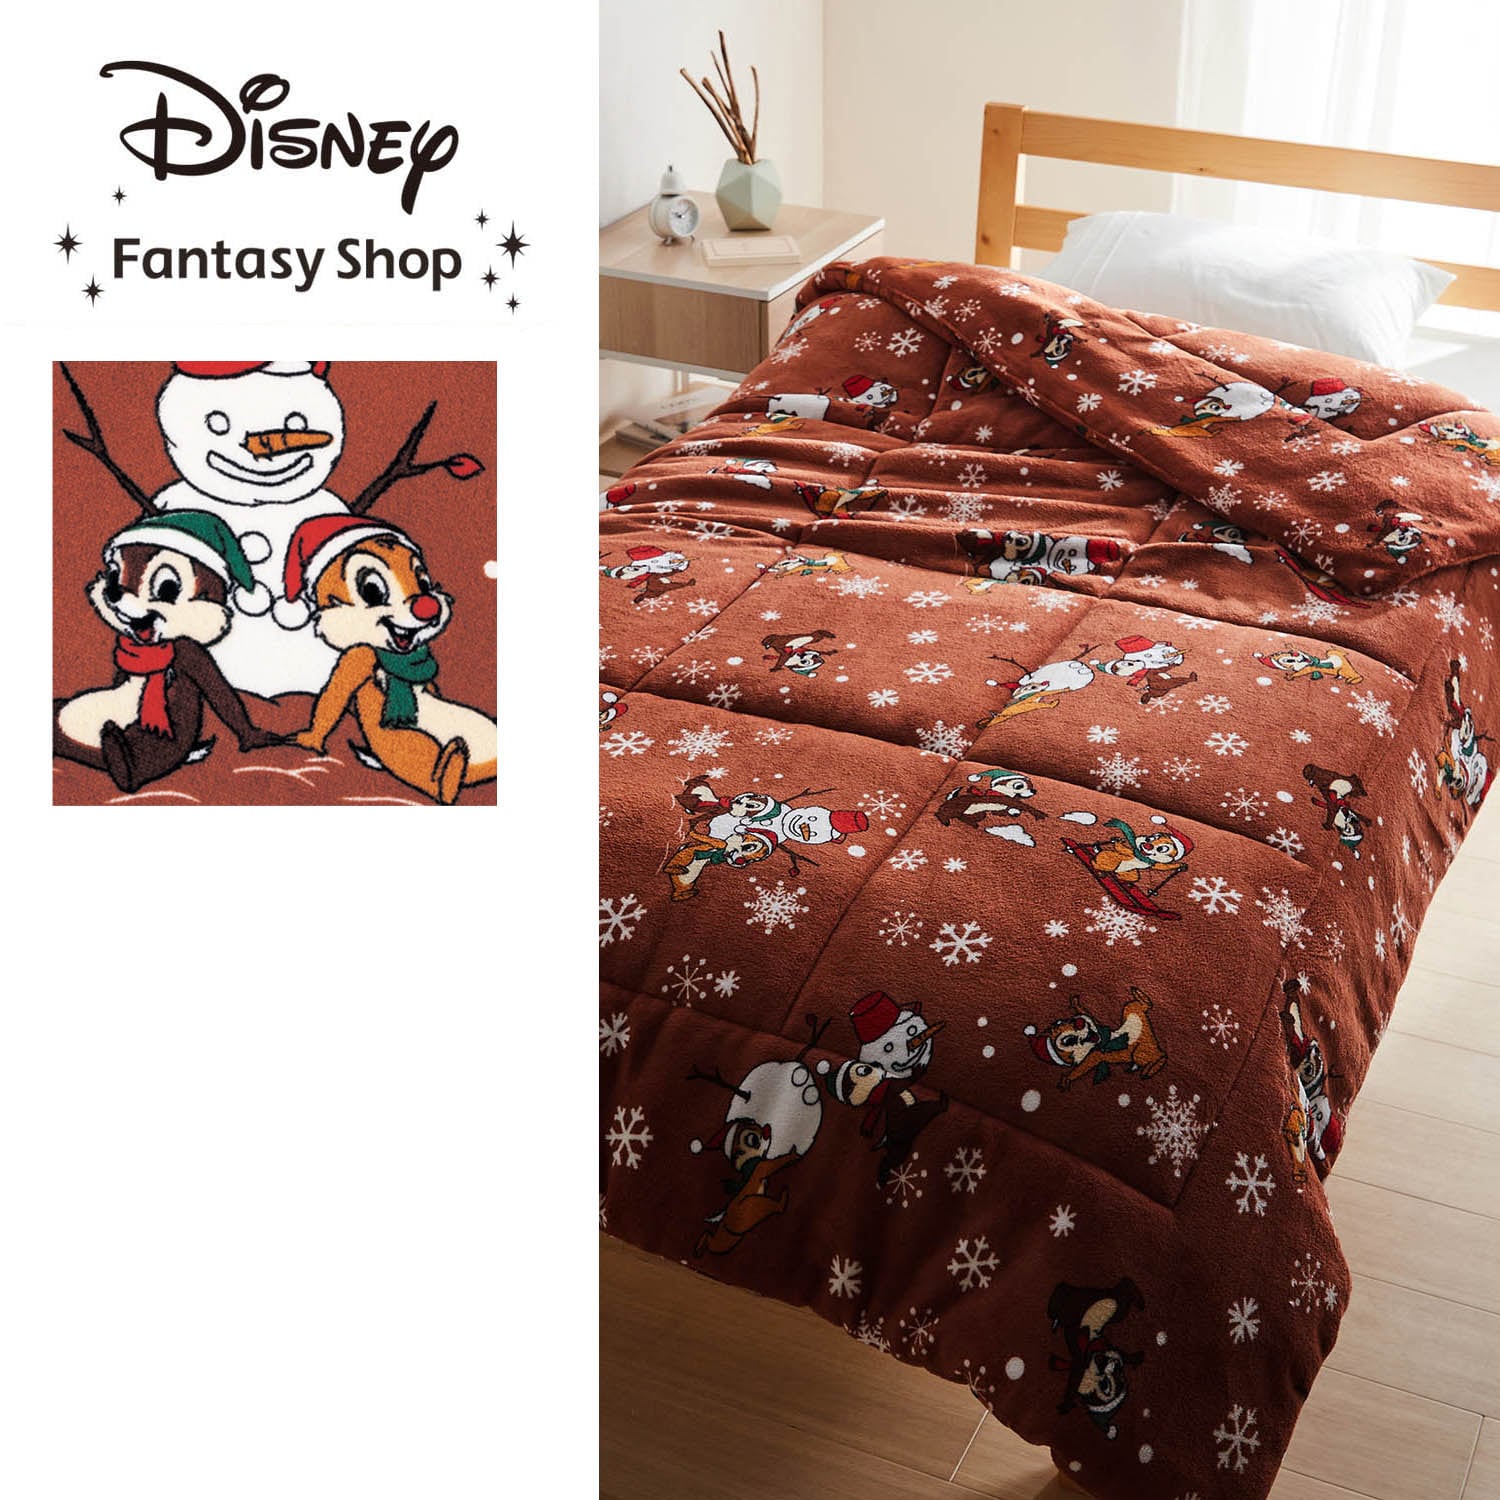 【ディズニー/Disney】【新柄登場】 ボリュームわた入り毛布(選べるキャラクター)画像